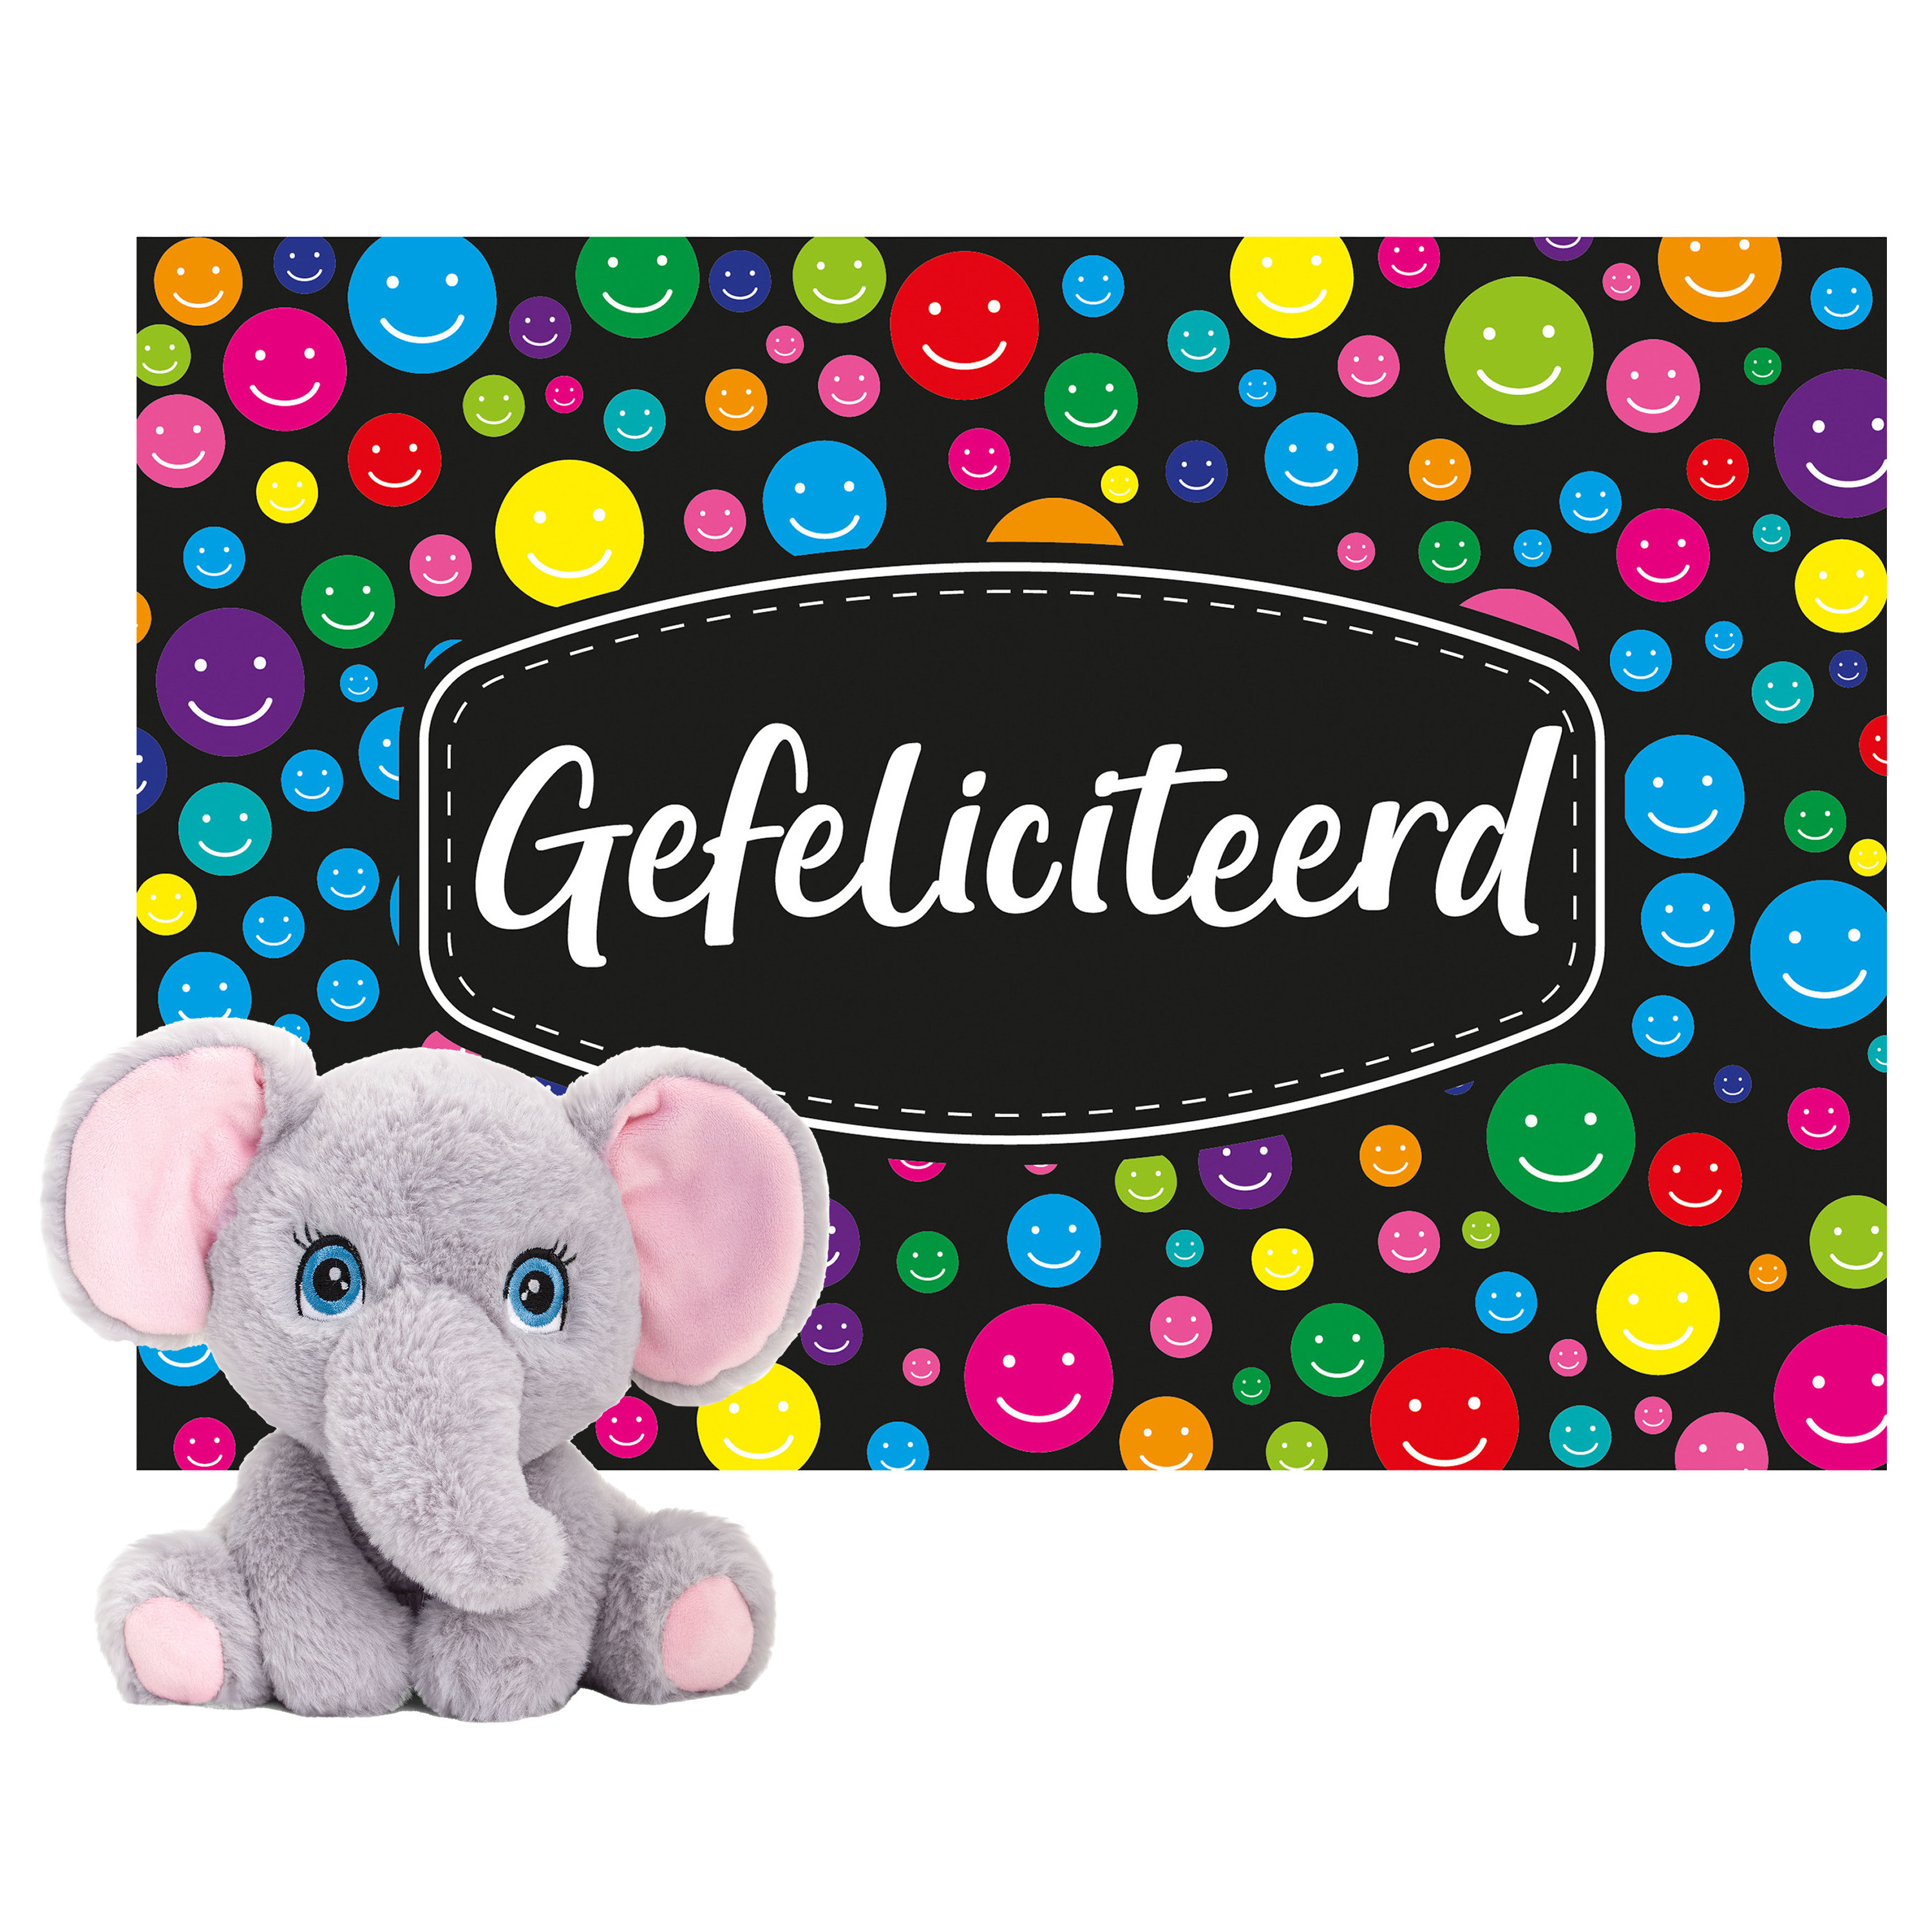 Keel toys Cadeaukaart Gefeliciteerd met knuffeldier olifant 18 cm